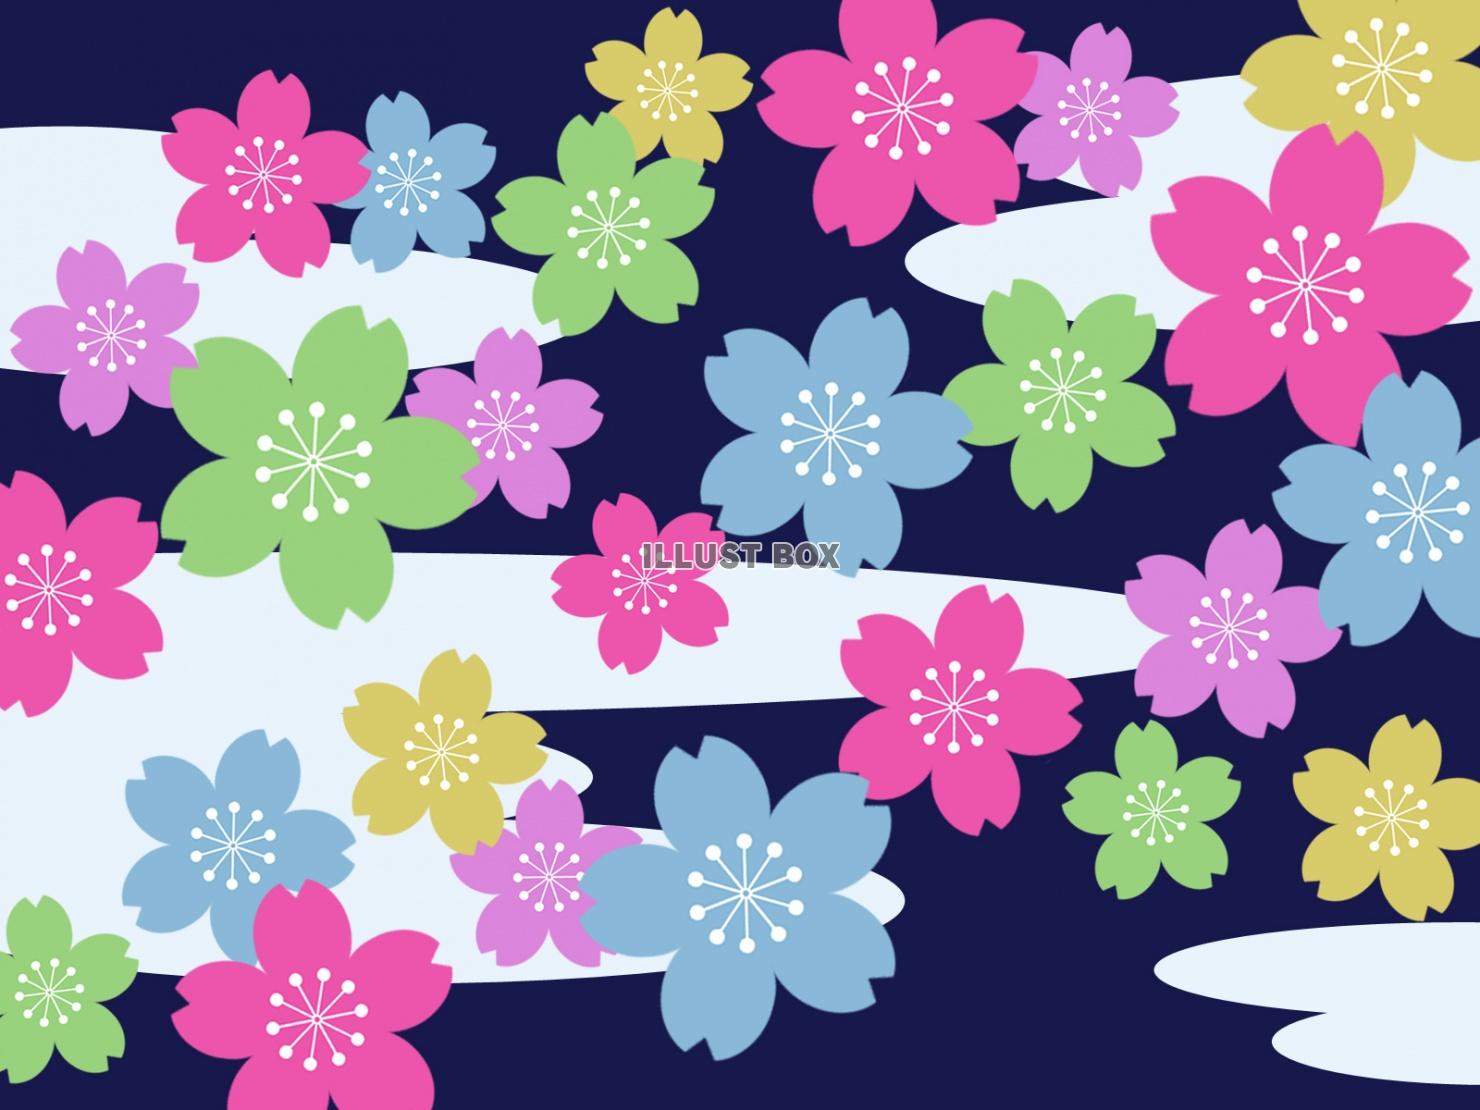 カラフルな桜の花模様壁紙和風背景素材イラスト